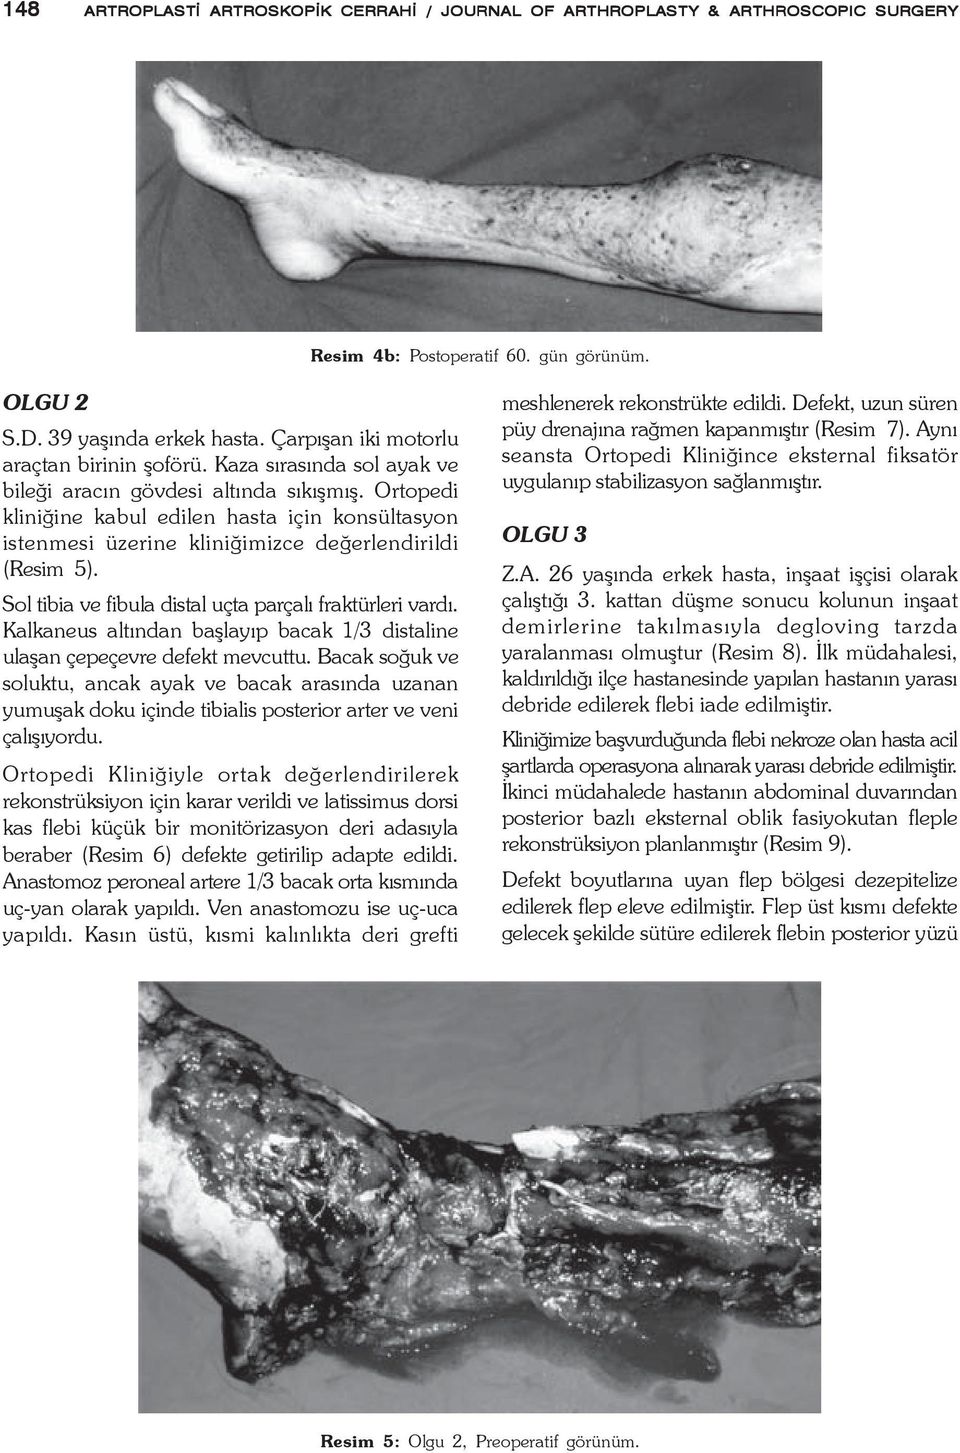 Ortopedi kliniðine kabul edilen hasta için konsültasyon istenmesi üzerine kliniðimizce deðerlendirildi (Resim 5). Sol tibia ve fibula distal uçta parçalý fraktürleri vardý.